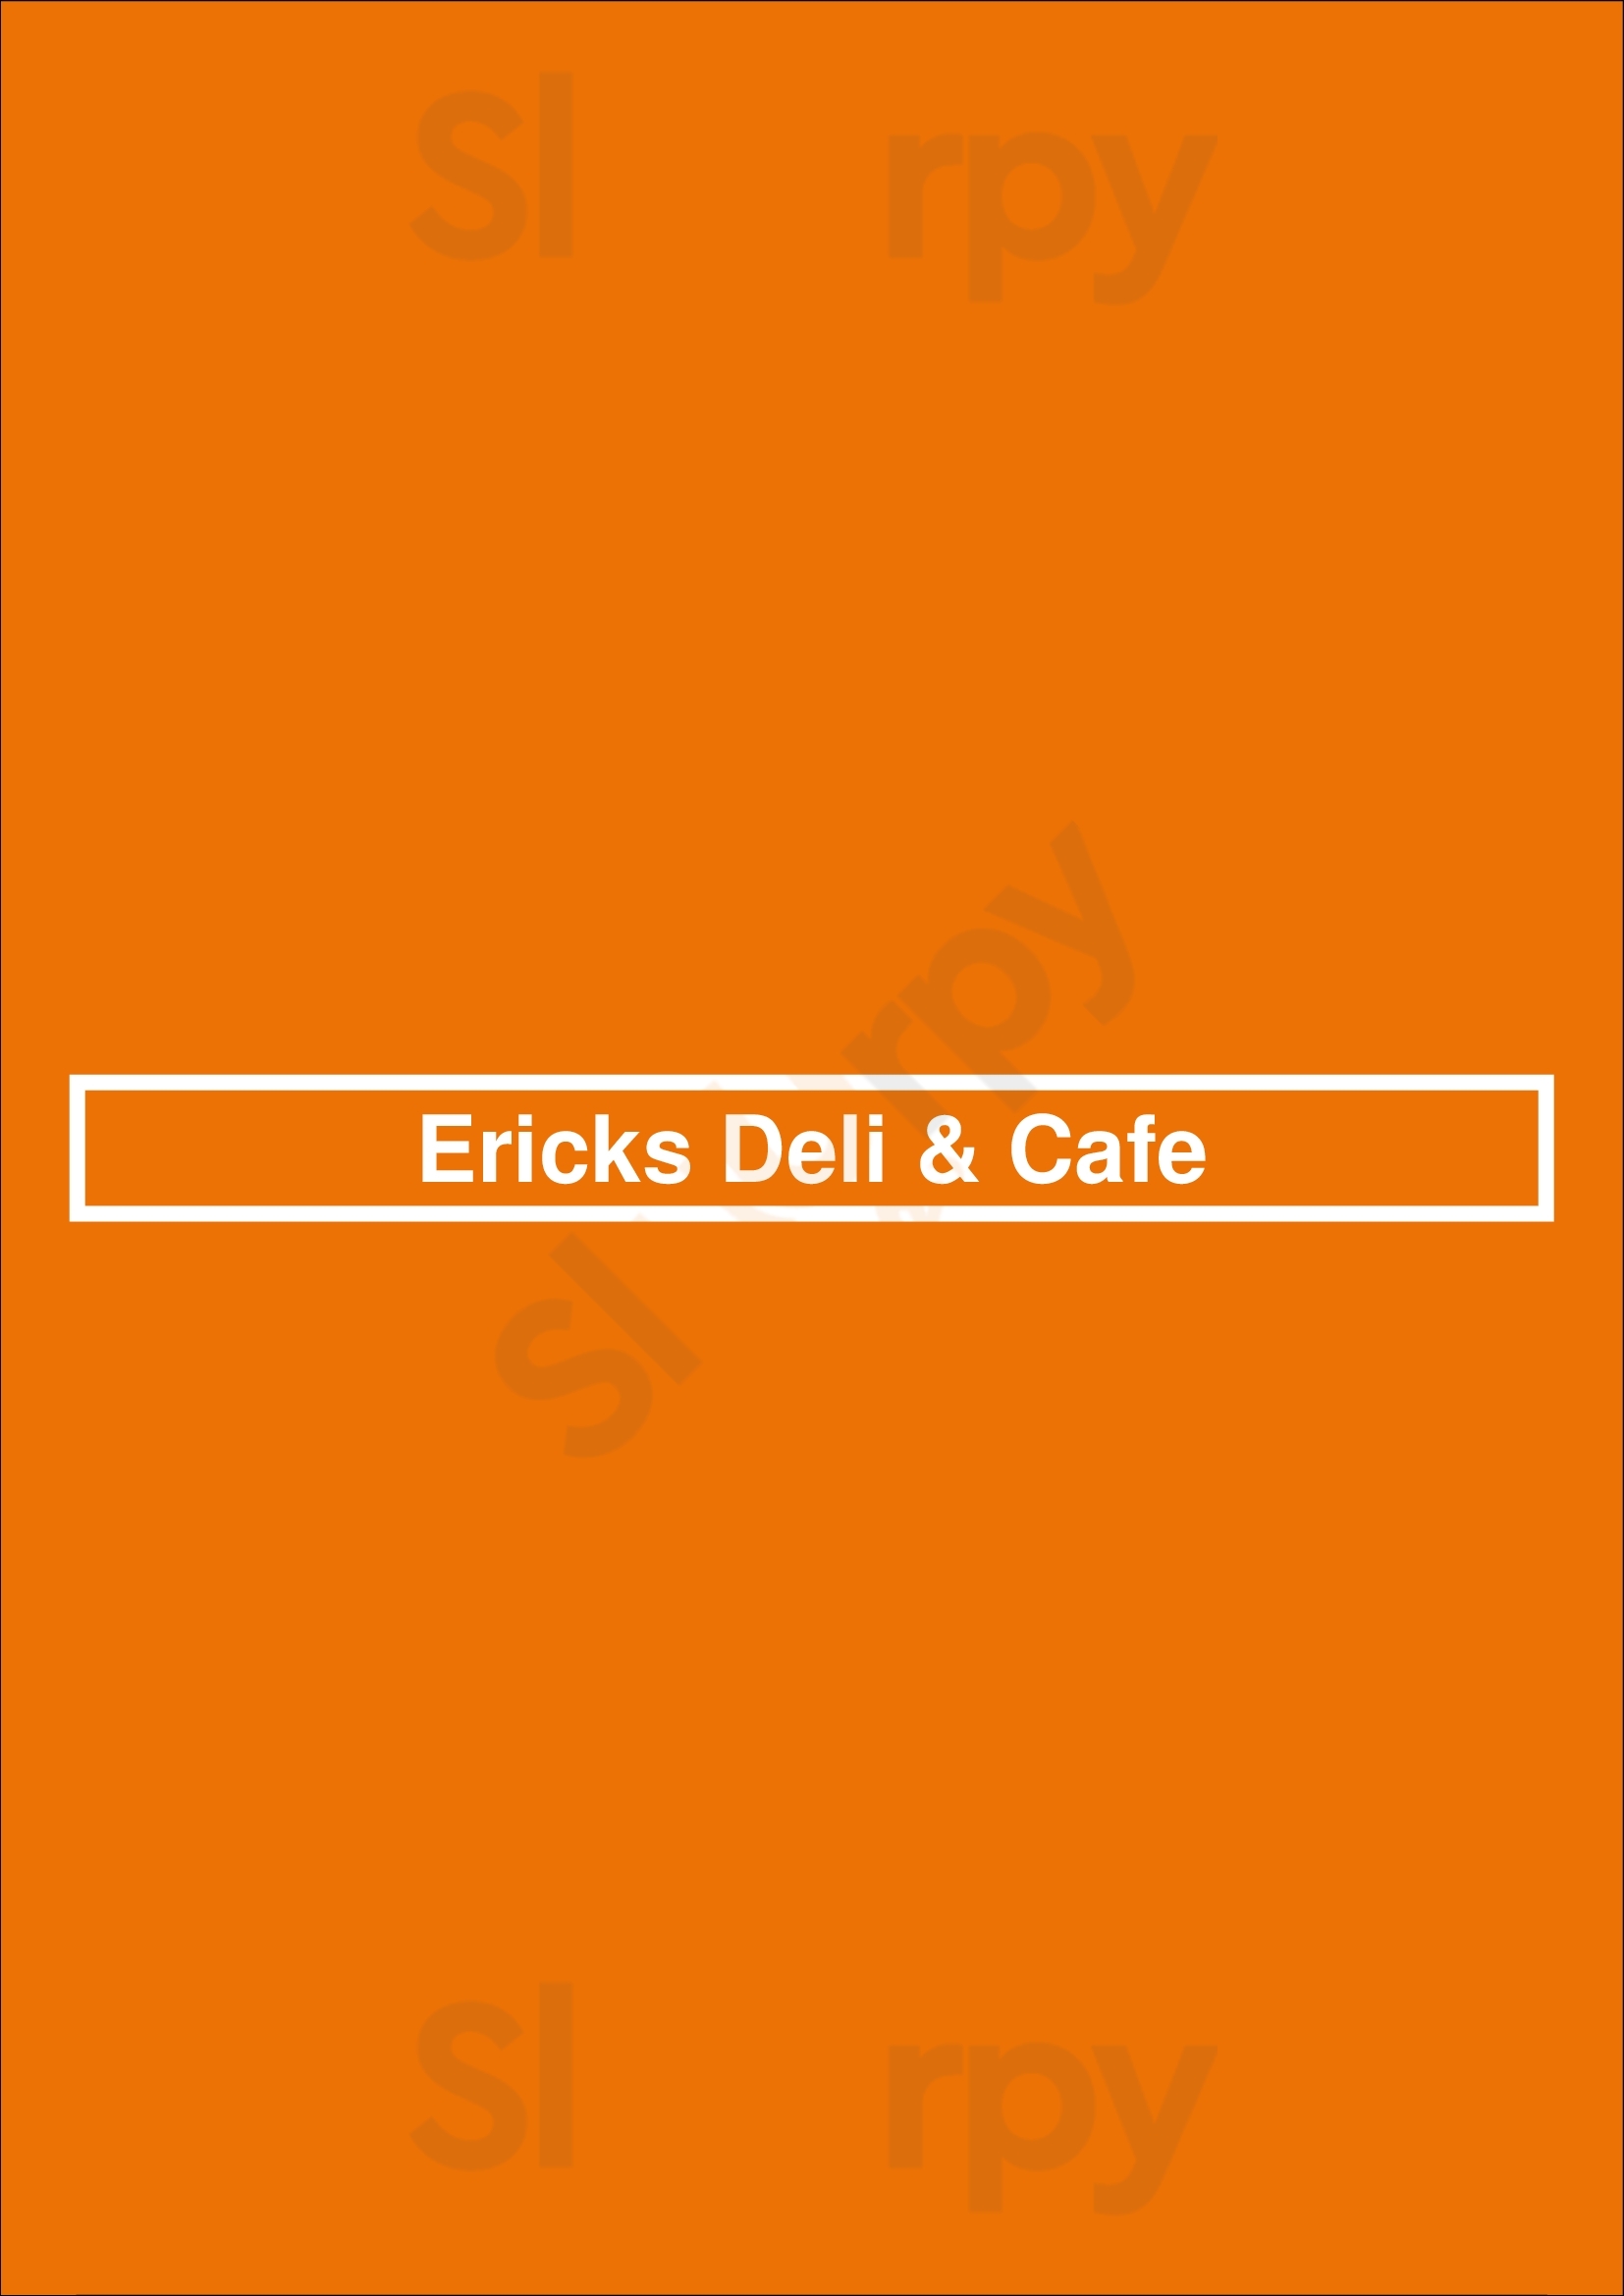 Ericks Deli & Cafe San Jose Menu - 1